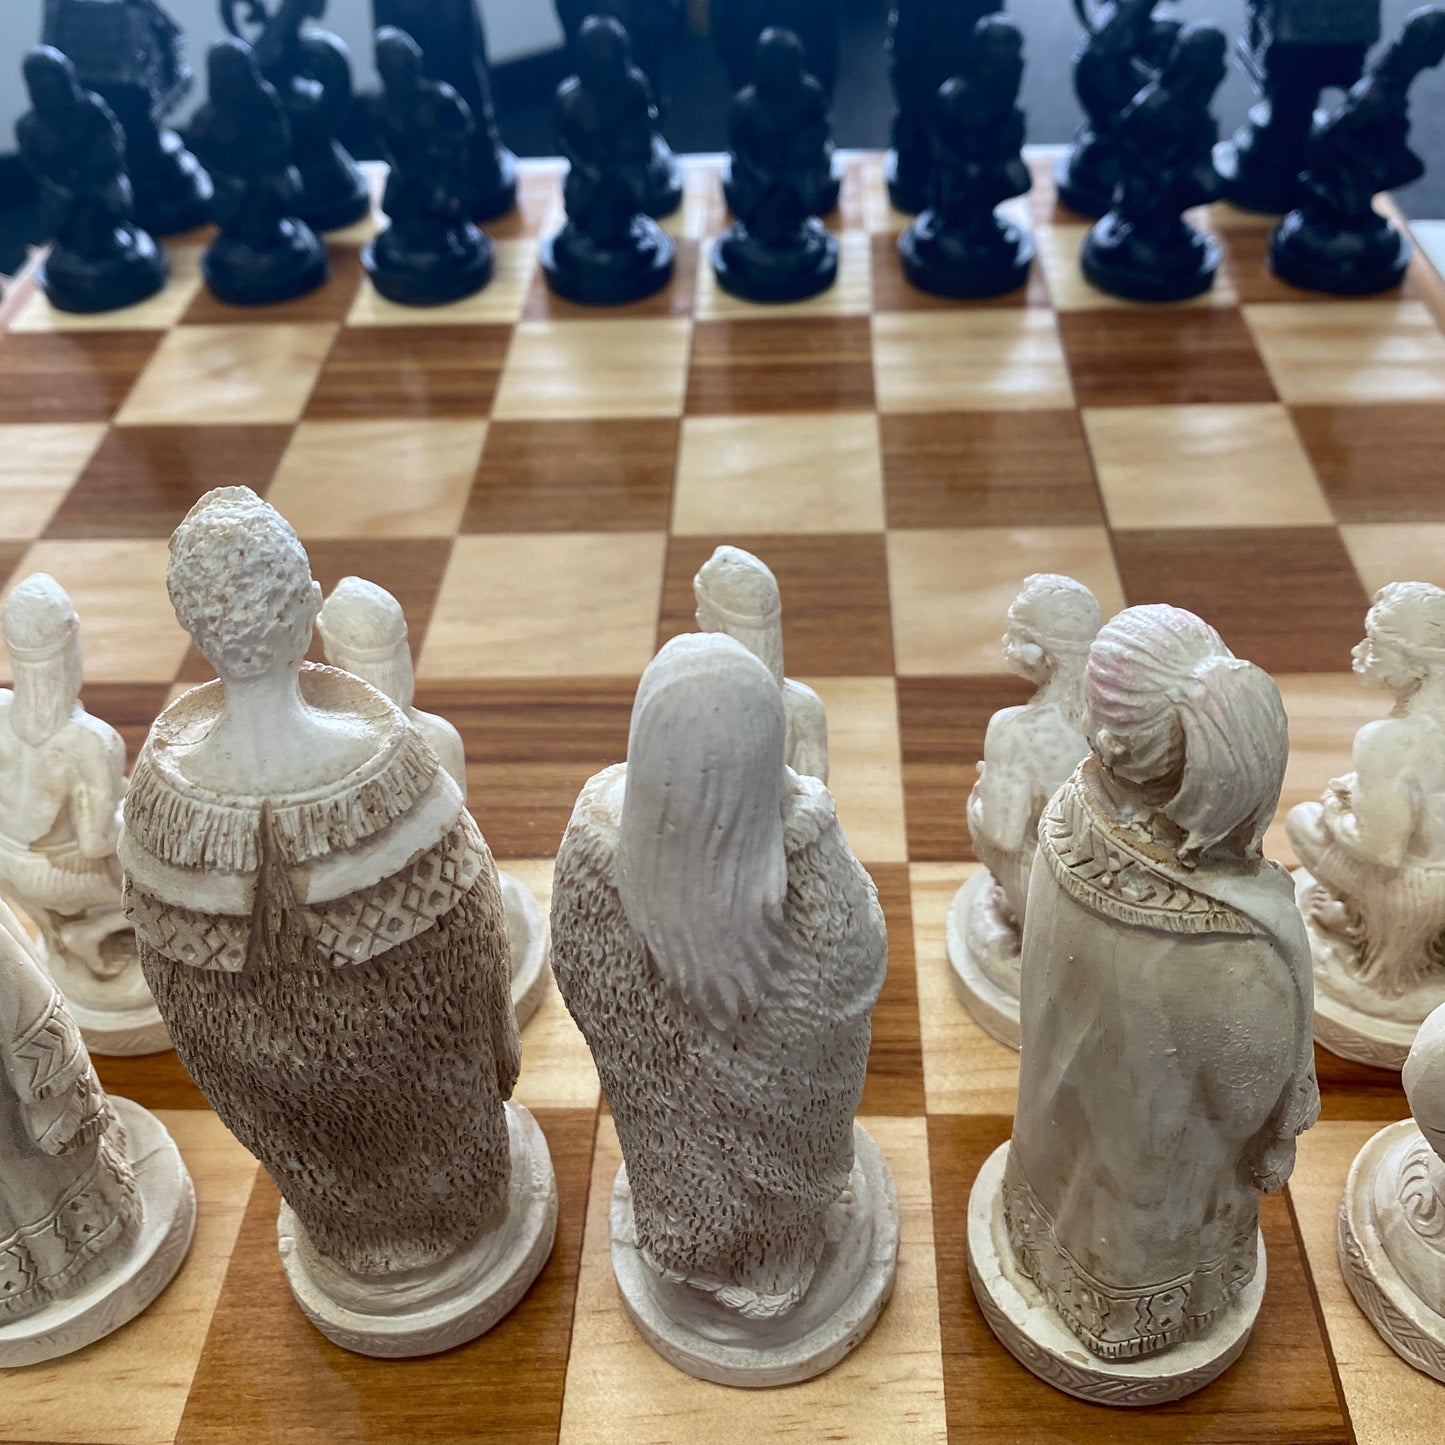 Māori Themed Resin Chess Set